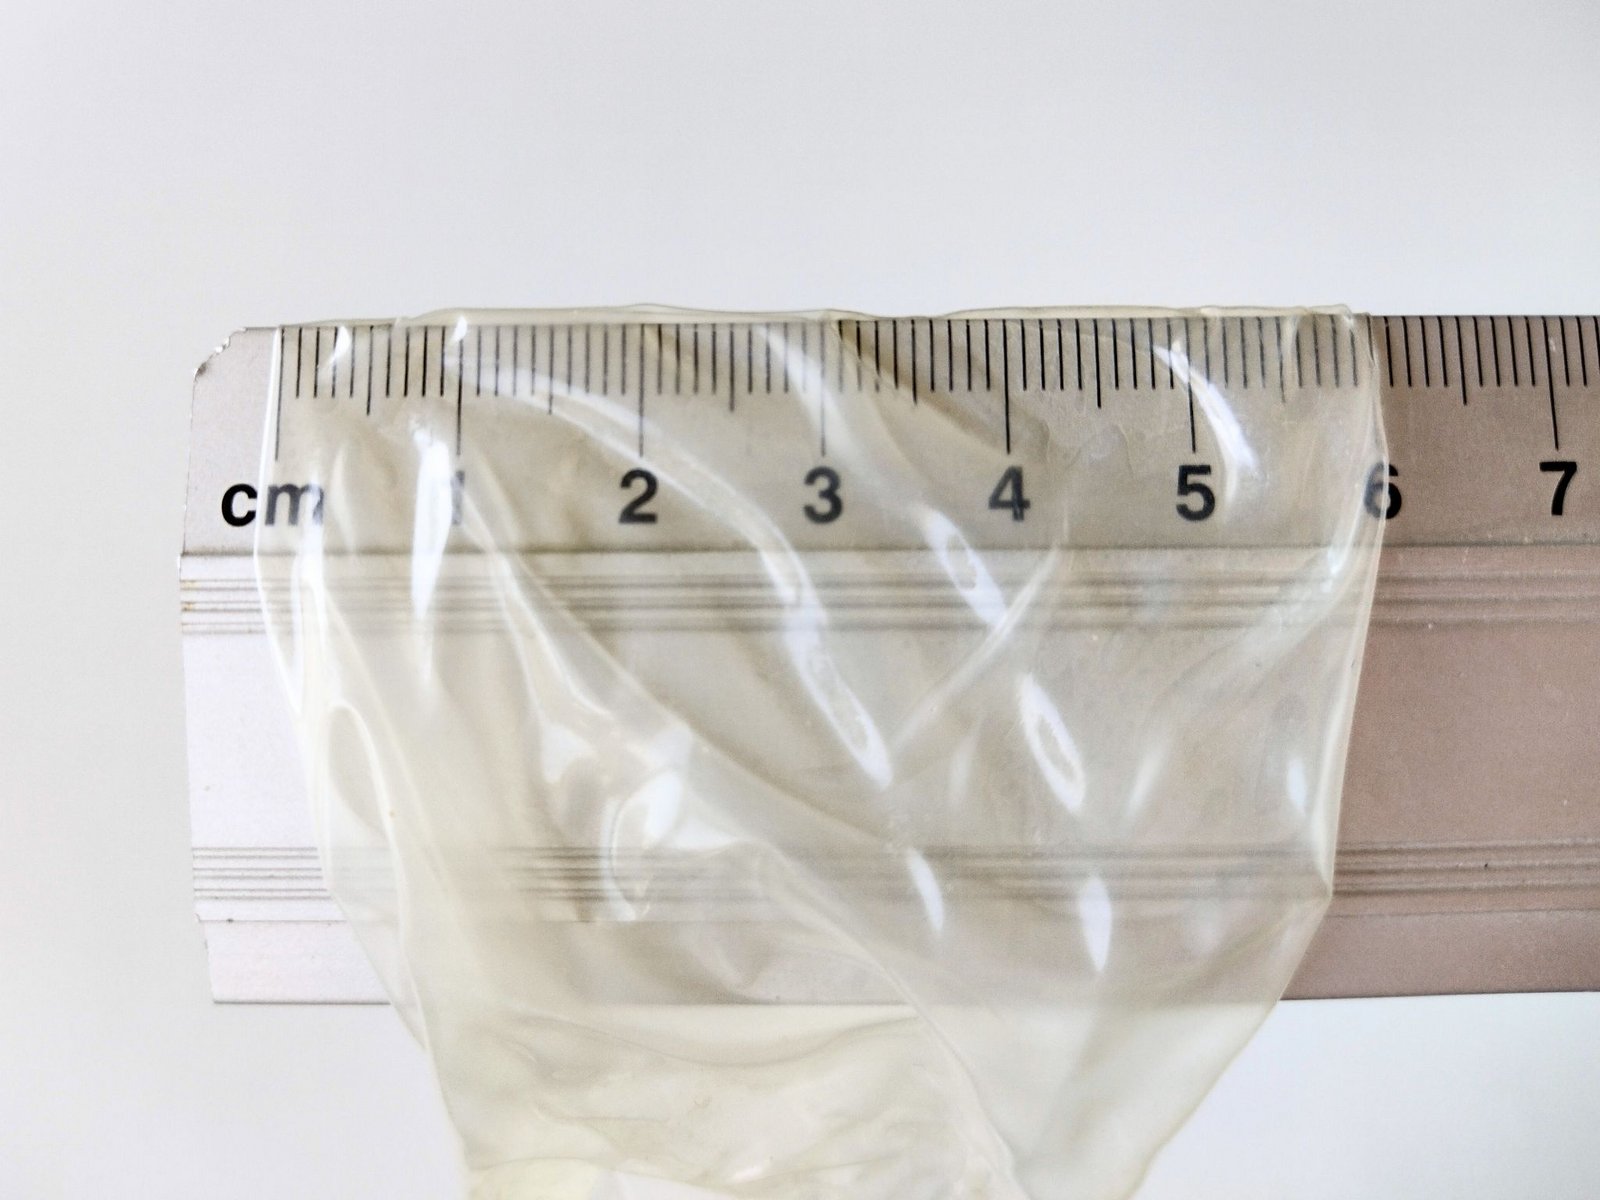 Cetvelle ölçülen bir prezervatifin nominal genişliği